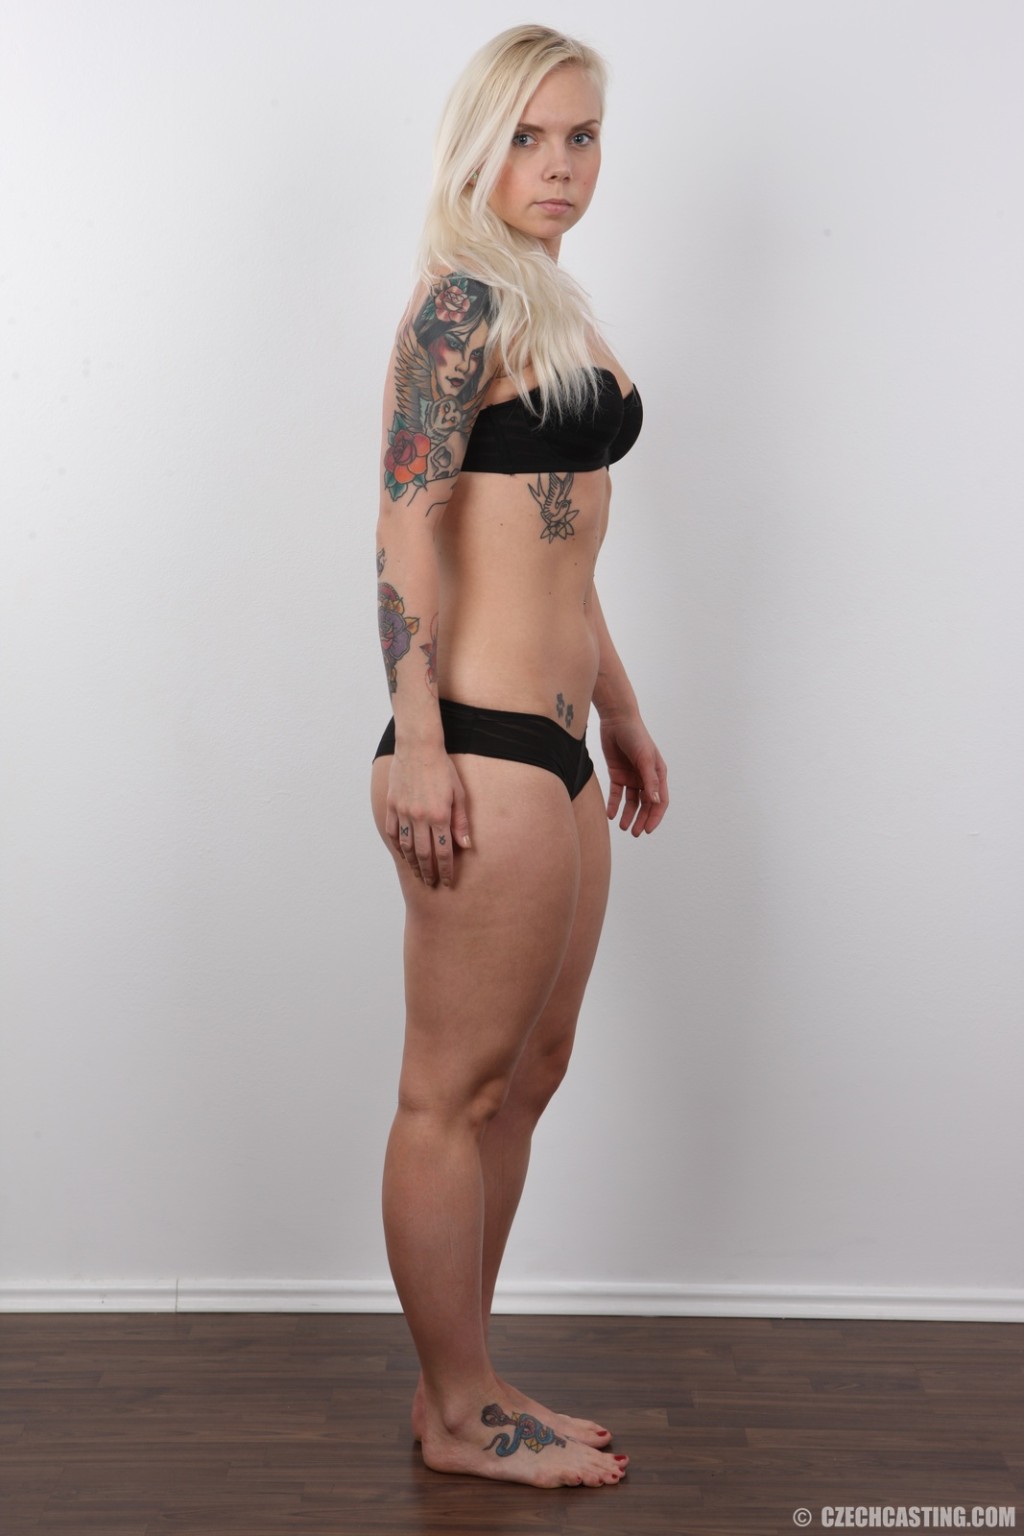 Tattooed amateur blonde poses nude #67109183